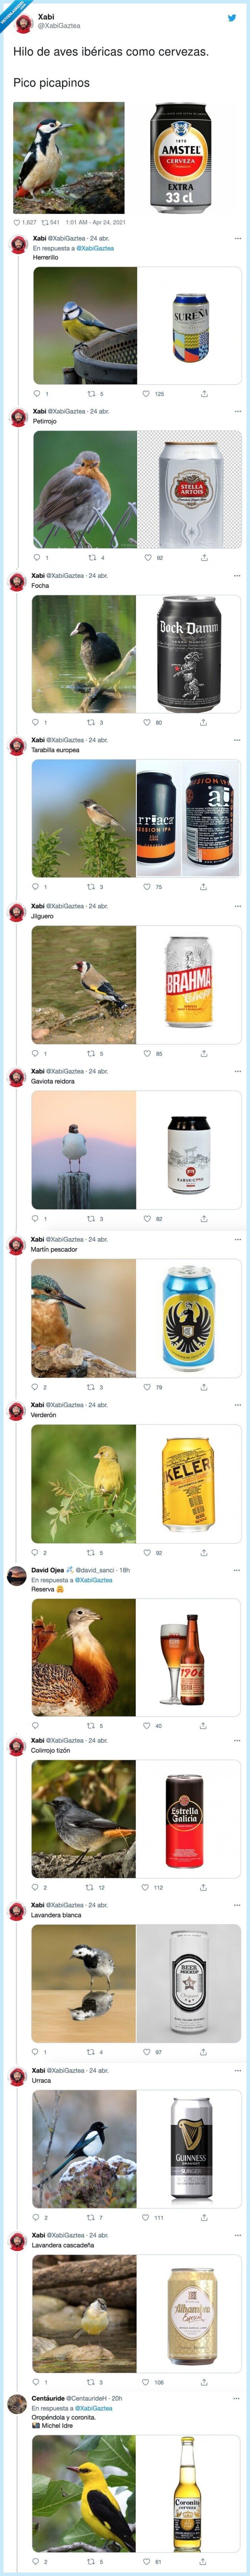 866839 - Hilo de aves ibéricas como cervezas, mezclando dos hobbies, por @XabiGaztea